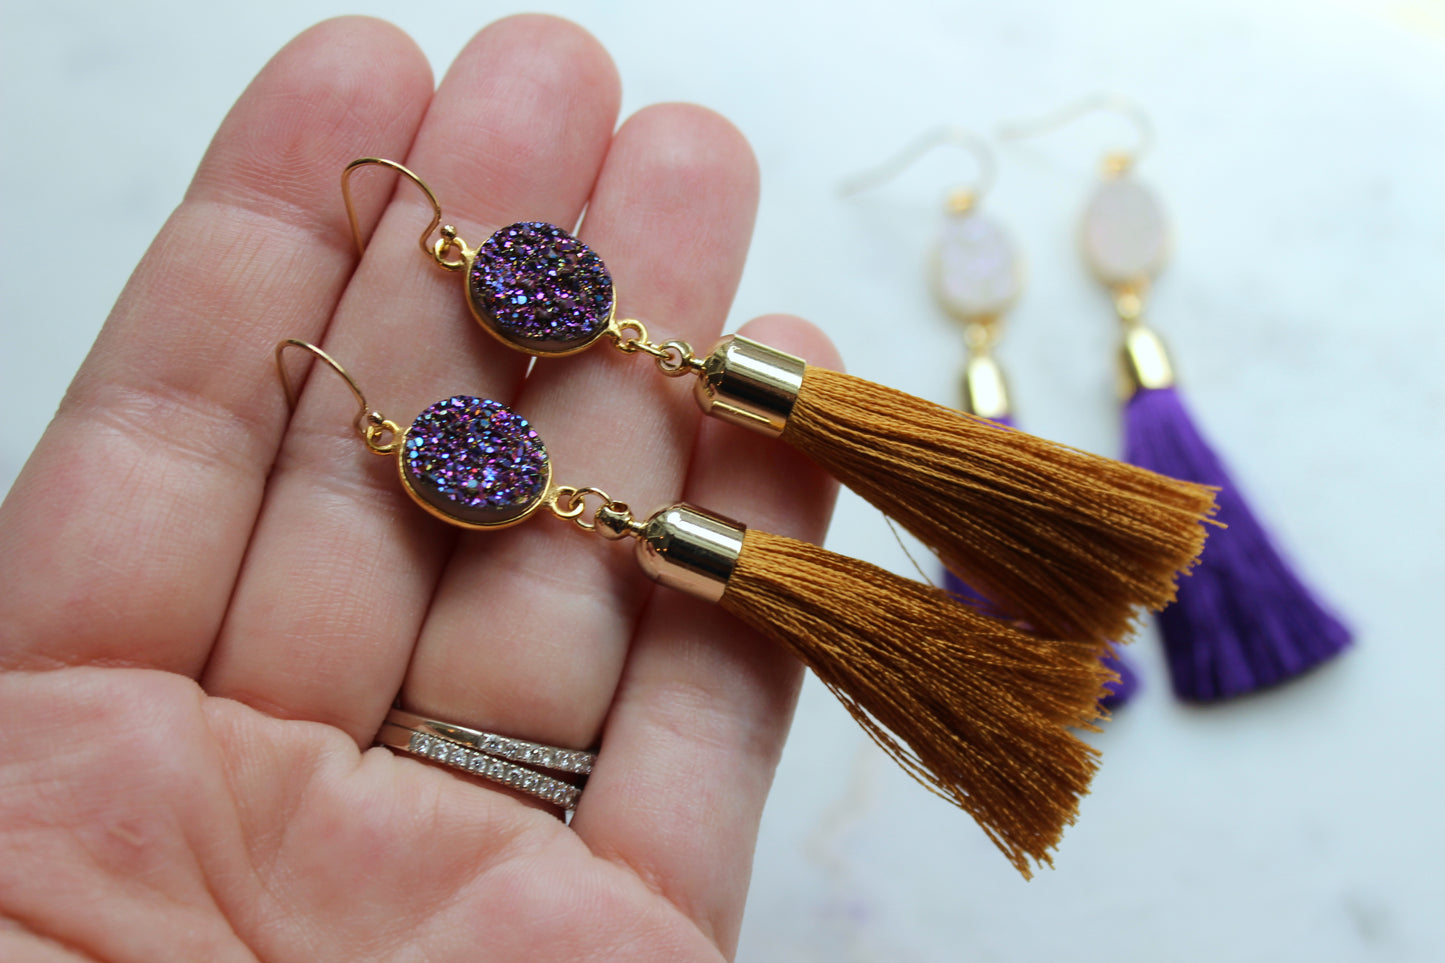 LSU Earrings, Purple and Gold Earrings, Tassel Earrings